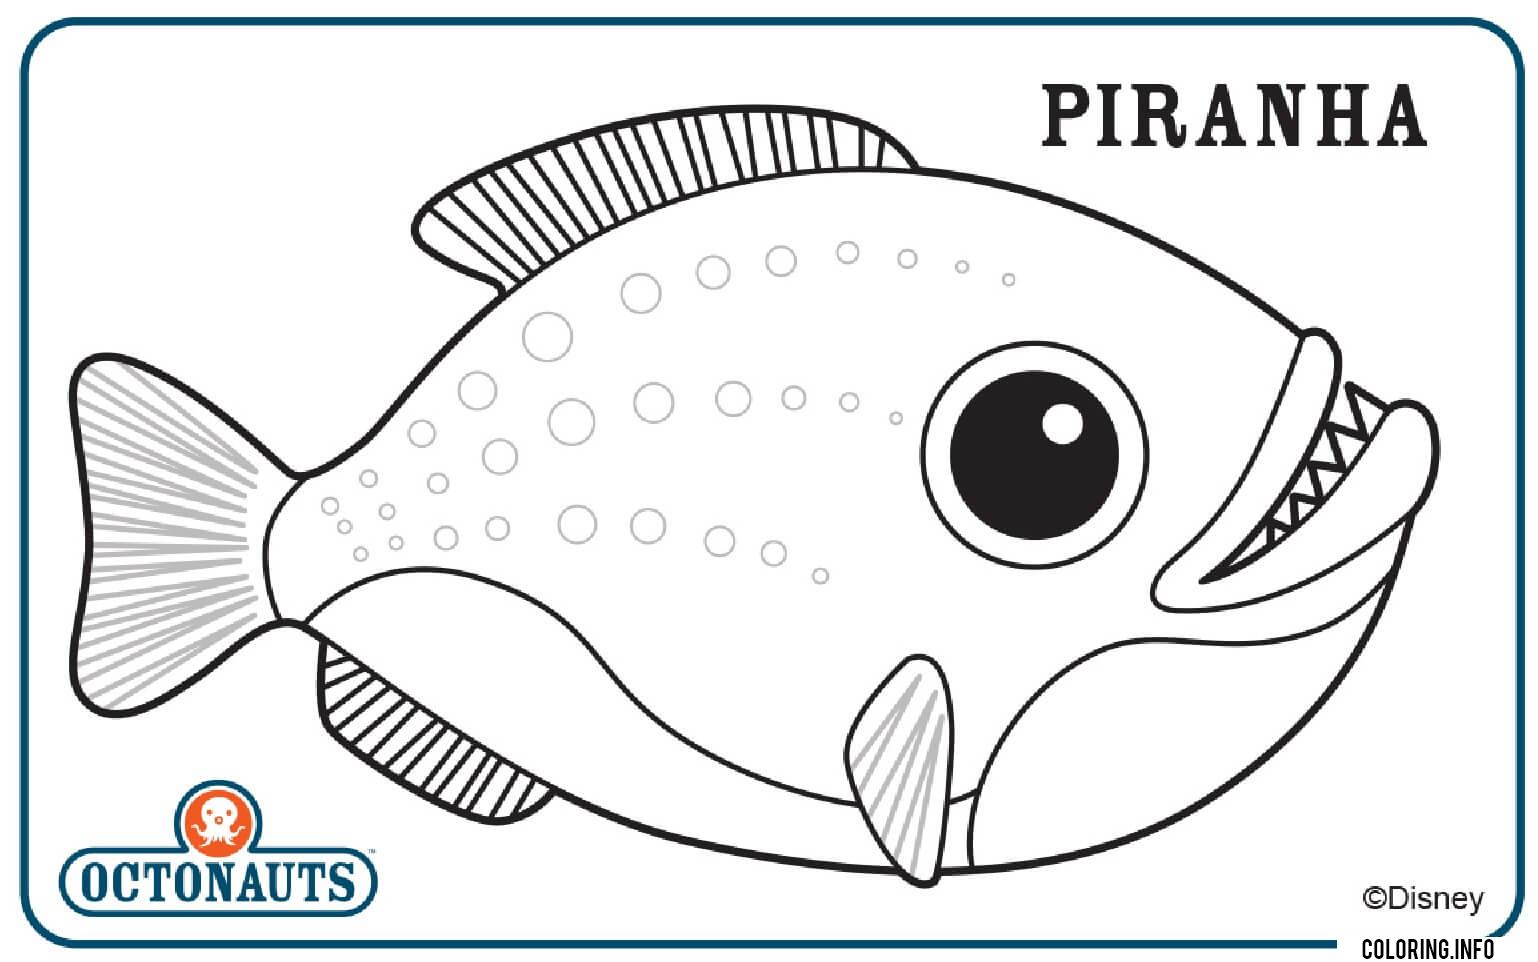 Piranha Octonaut Creature coloring